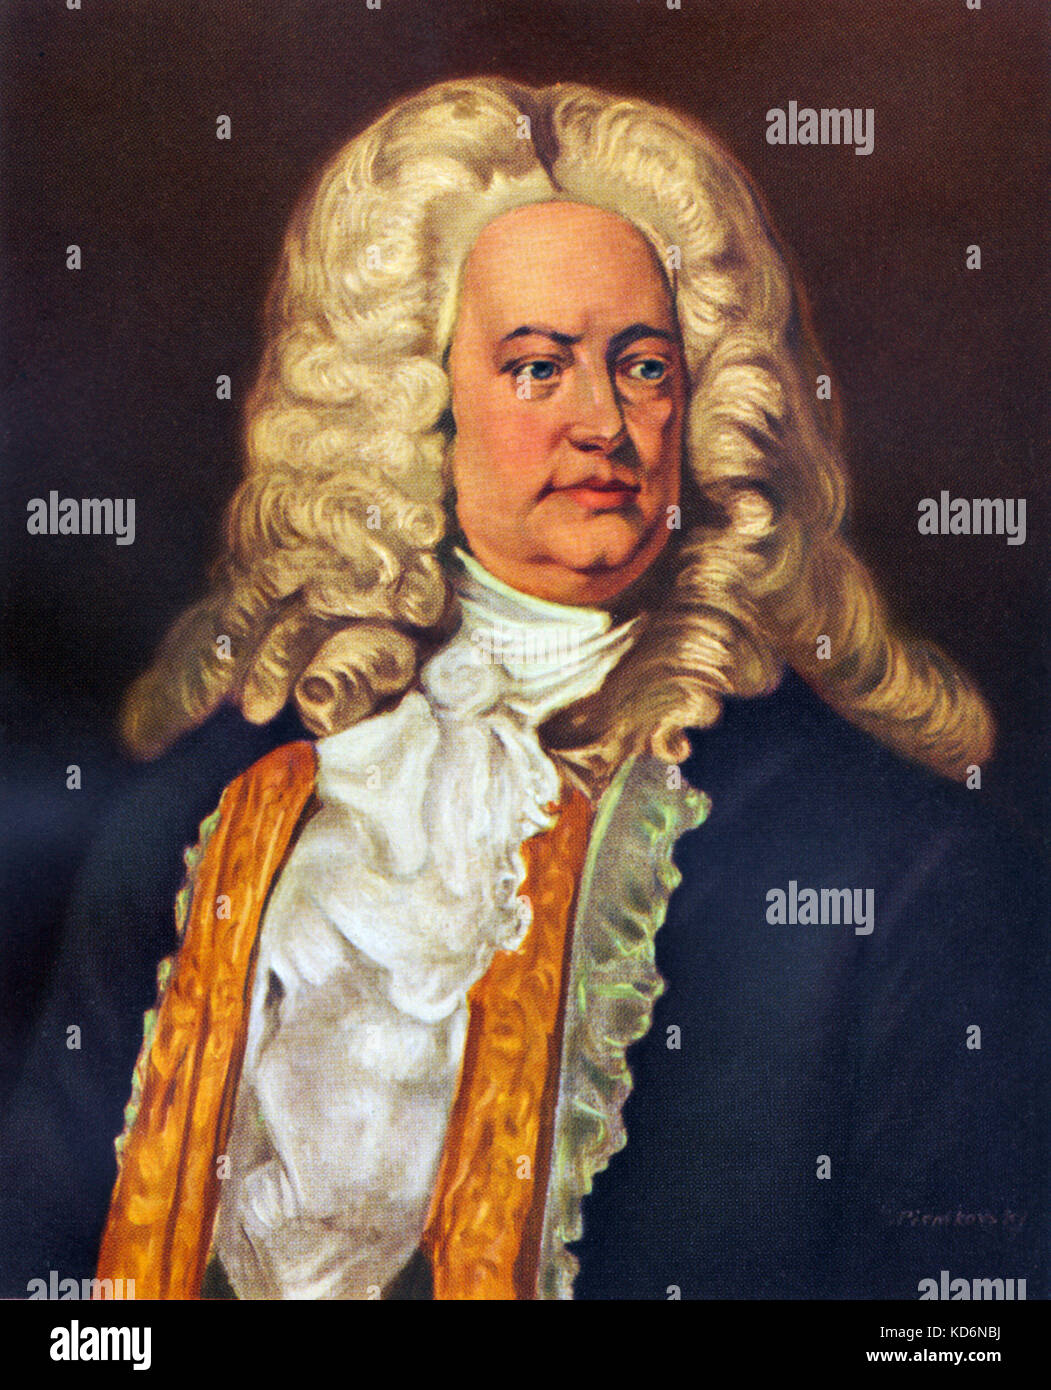 Georg Friedrich Haendel, portrait. Compositeur espagnol-anglais par N. Piontkovsky. 1685-1759. À partir de la Collection d'art suisse. Banque D'Images